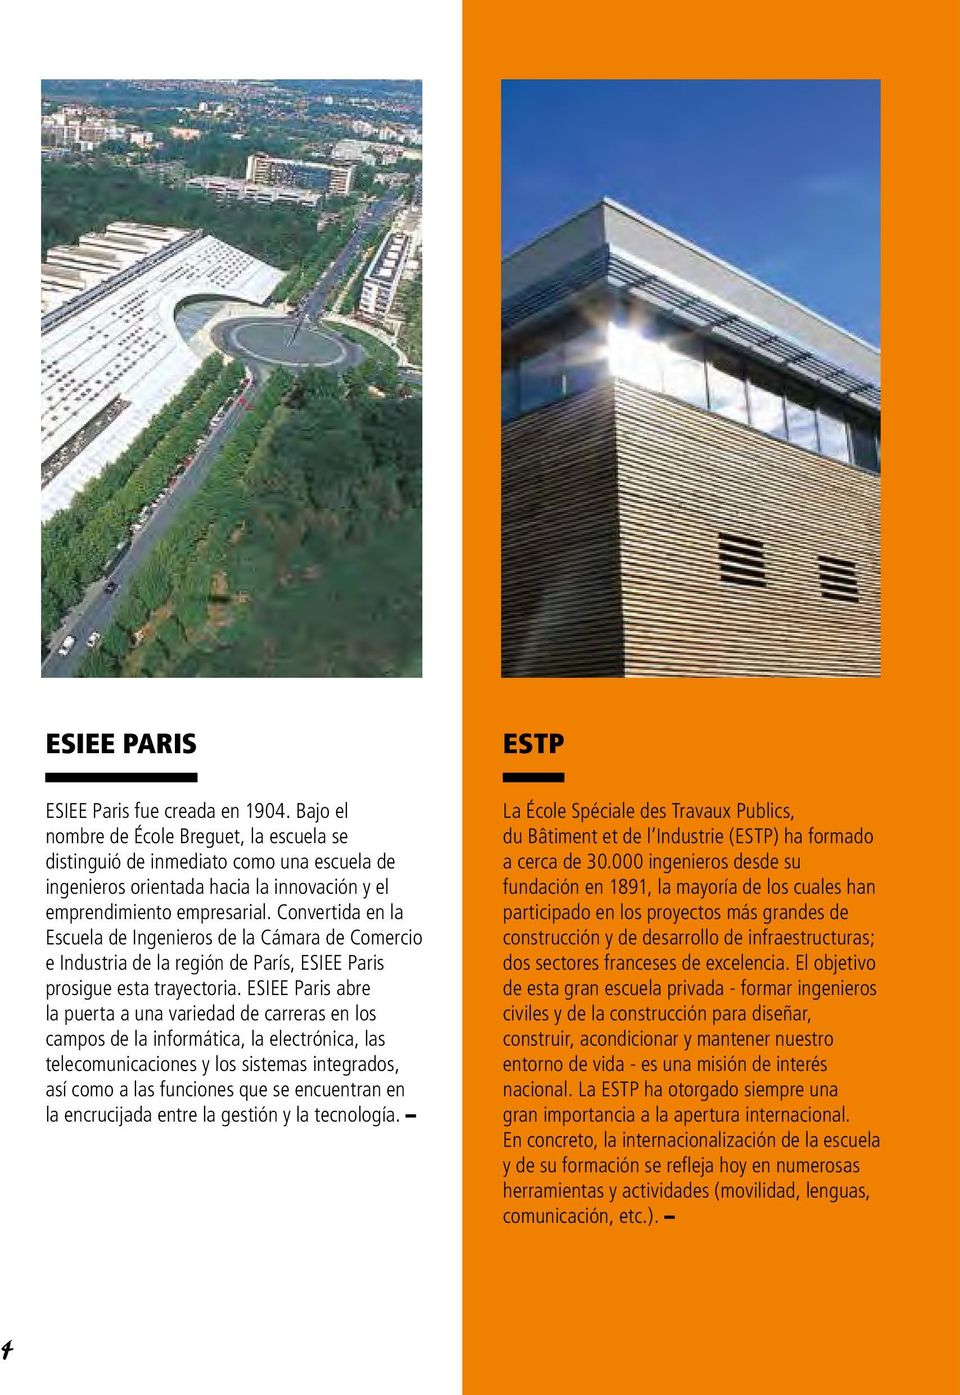 Convertida en la Escuela de Ingenieros de la Cámara de Comercio e Industria de la región de París, ESIEE Paris prosigue esta trayectoria.